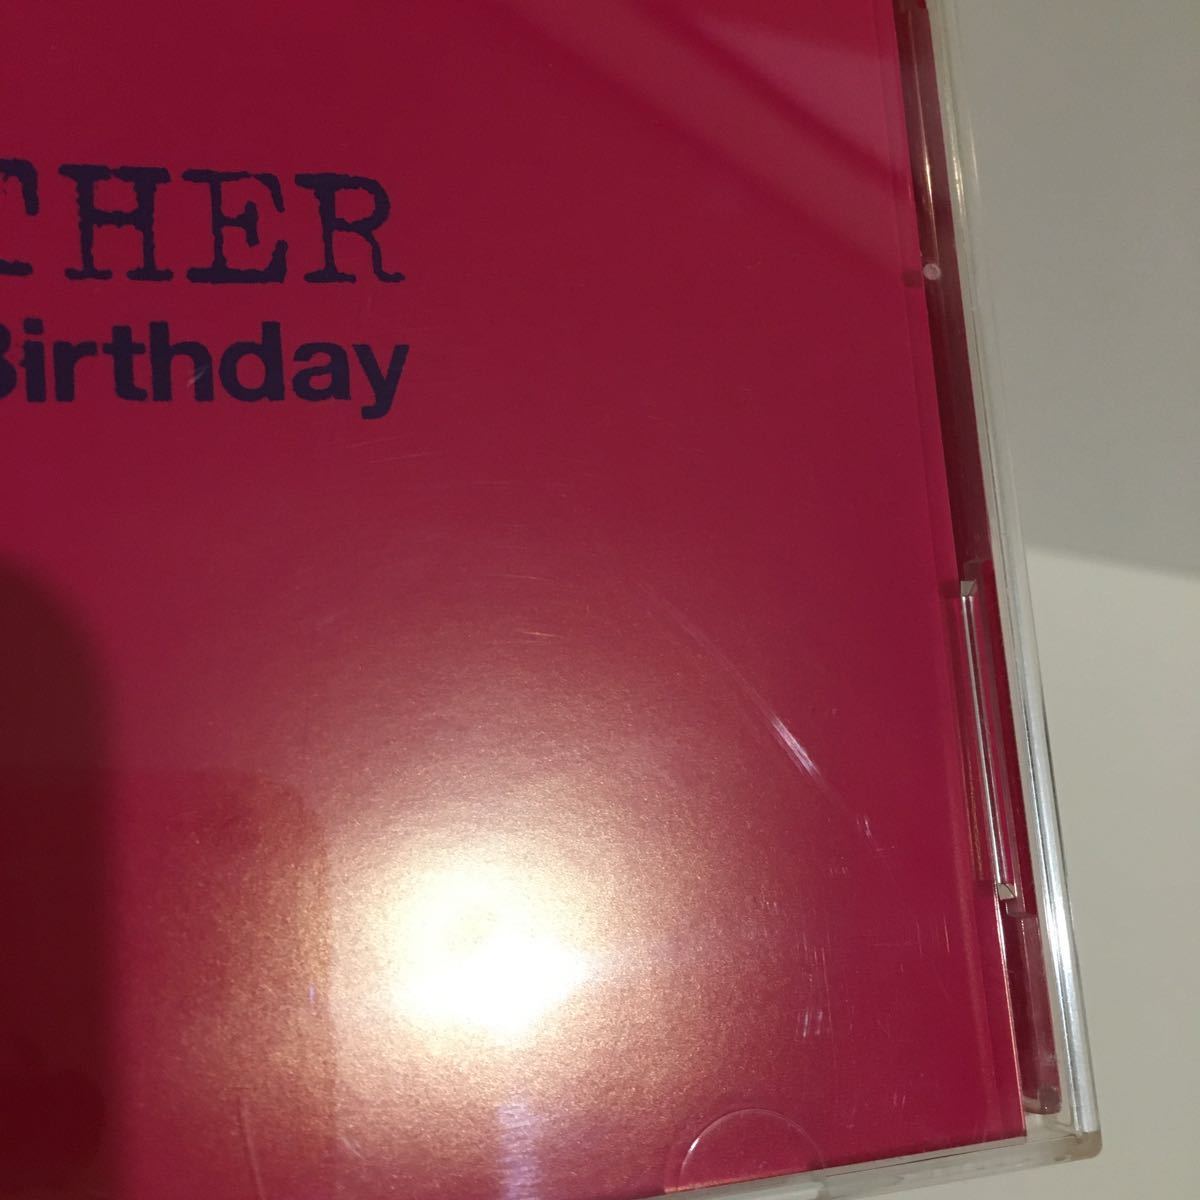 The Birthday MOTHER первый раз ограничение запись (CD + DVD) б/у товар chibayu незначительный ke The день рождения 